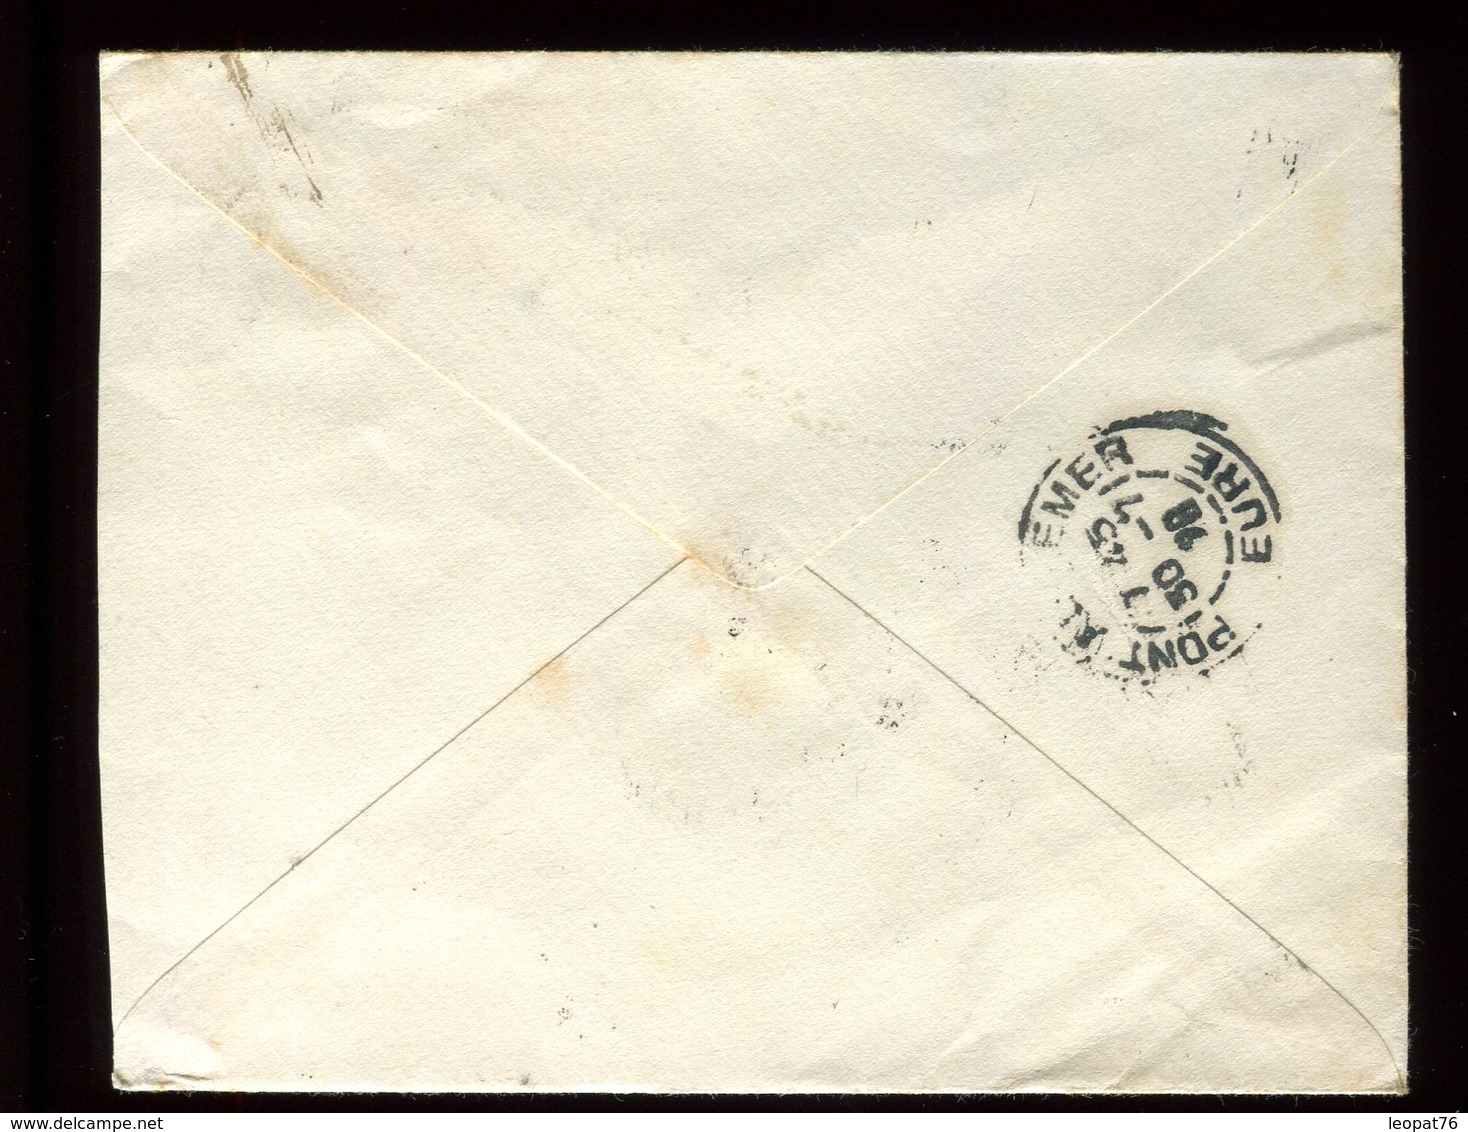 Inde - Entier Postal + Complément Pour La France En 1928 - Réf O55 - 1911-35 Roi Georges V